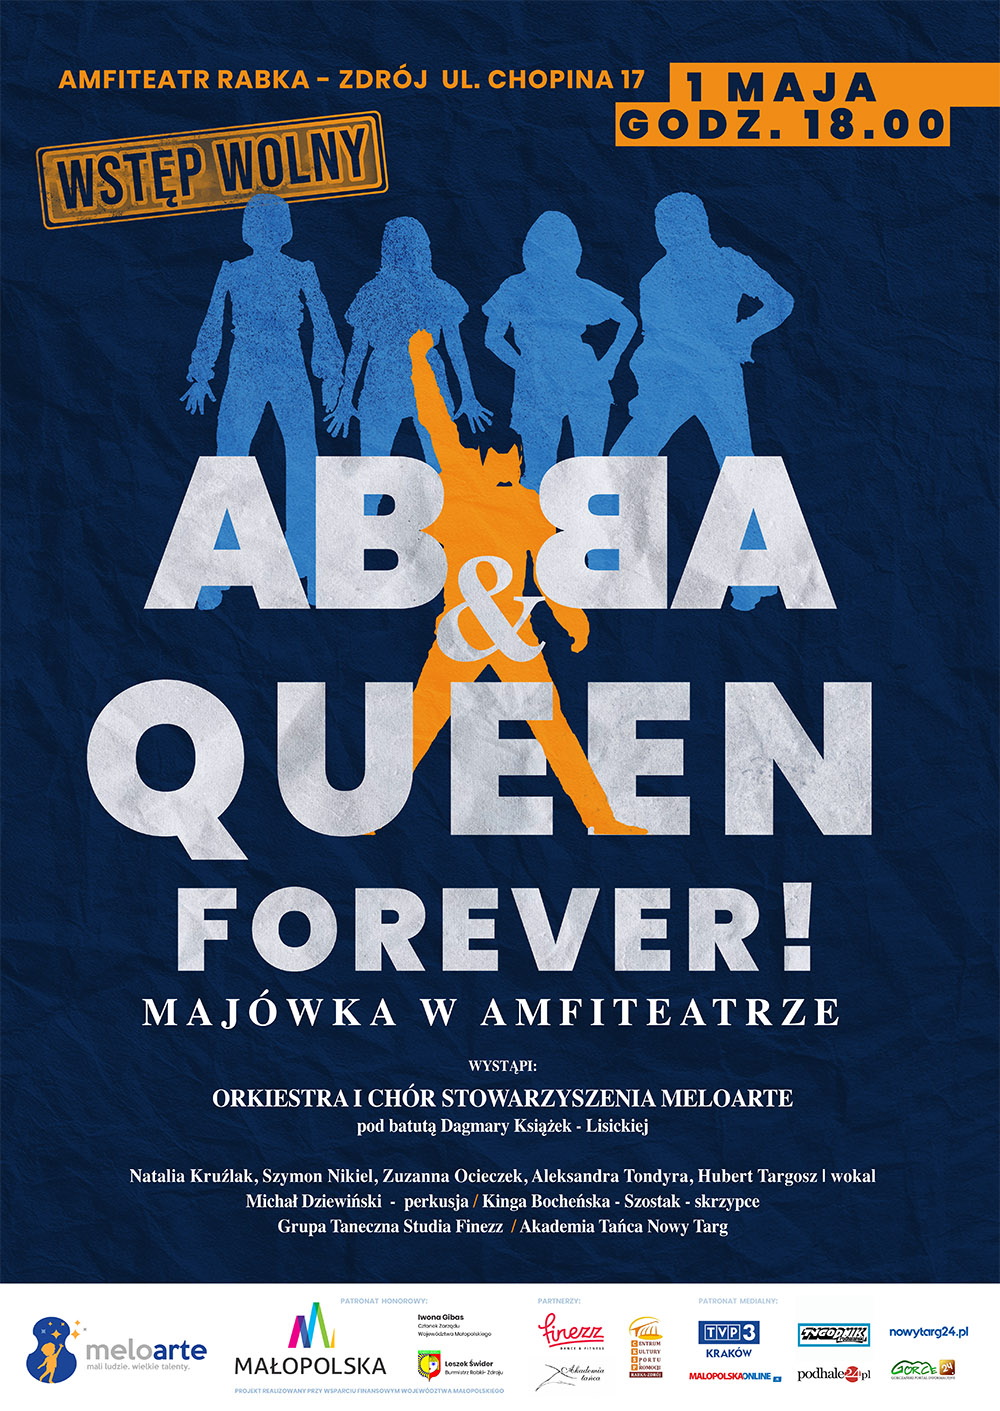 Plakat koncertu. Na granatowym tle jasnoniebieskie cienie czterech postaci - z zespołu ABBA i żółty cień Freddiego Merkury z zespołu Queen, Białe i żółte napisy z informacjami o koncercie. Na dole pasek z licznymi logotypami.